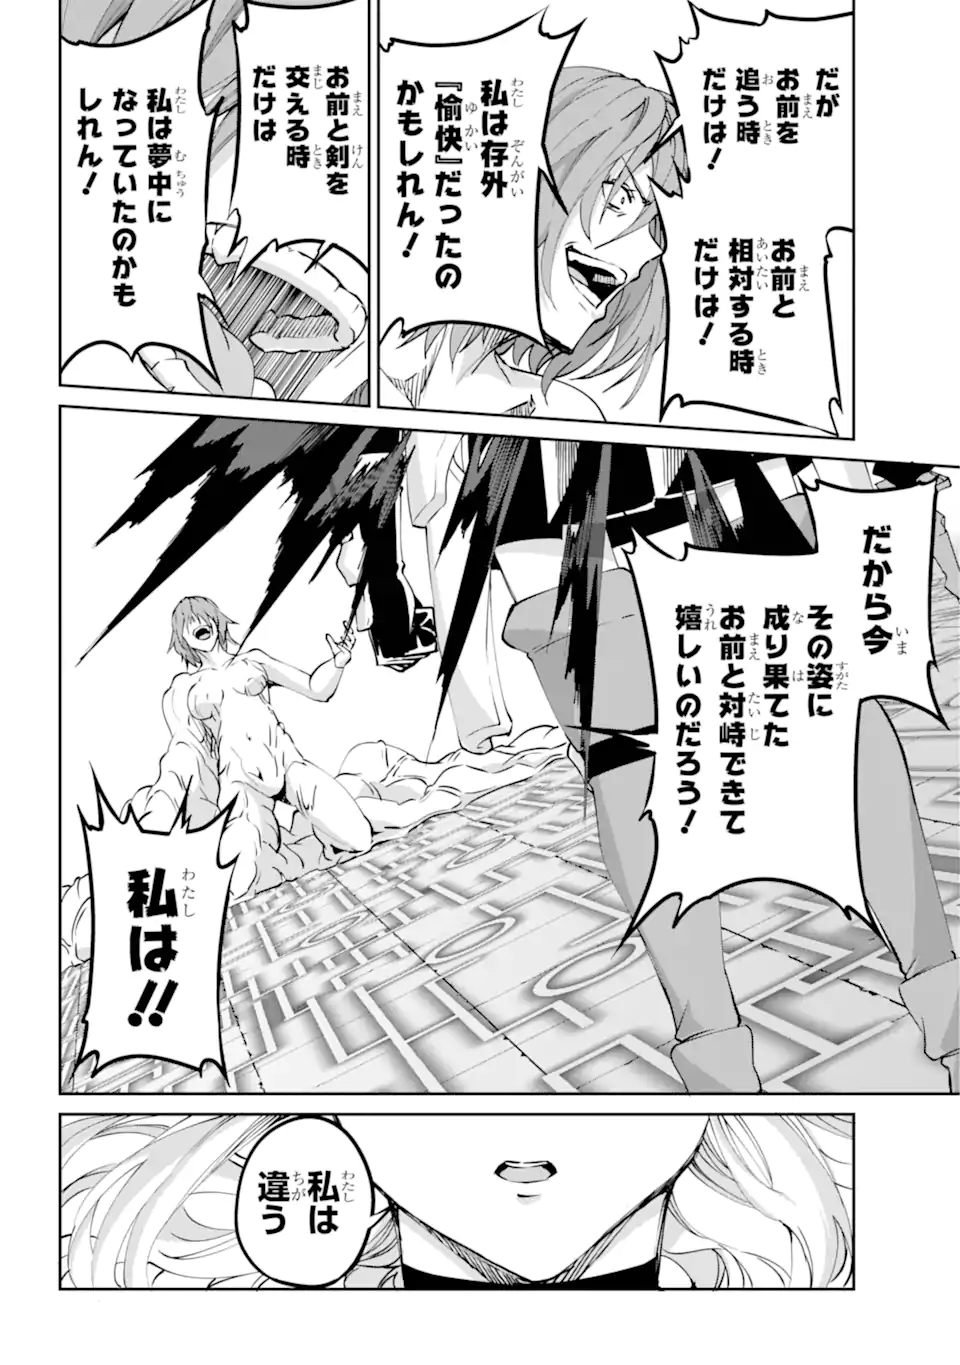 Dungeon ni Deai wo Motomeru no wa Machigatte Iru Darou ka Gaiden - Sword Oratoria - Chapter 120.3 - Page 4